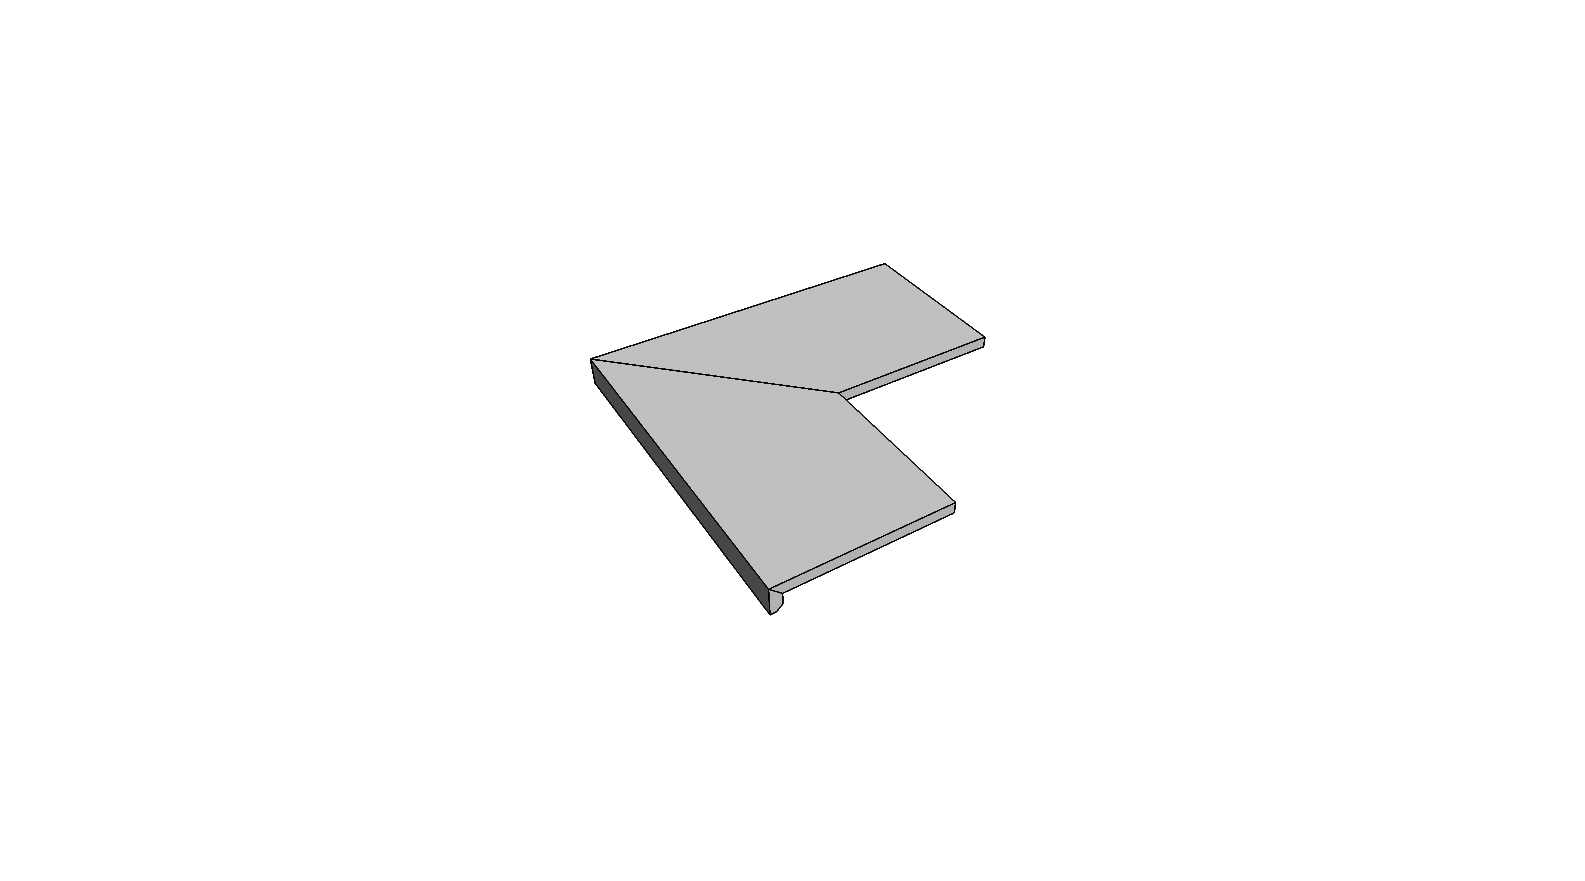 L-rand randtegel aflopend gelijmd volledige buitenhoek (2 stuks) <span style="white-space:nowrap;">30x60 cm</span>   <span style="white-space:nowrap;">ép. 20mm</span>